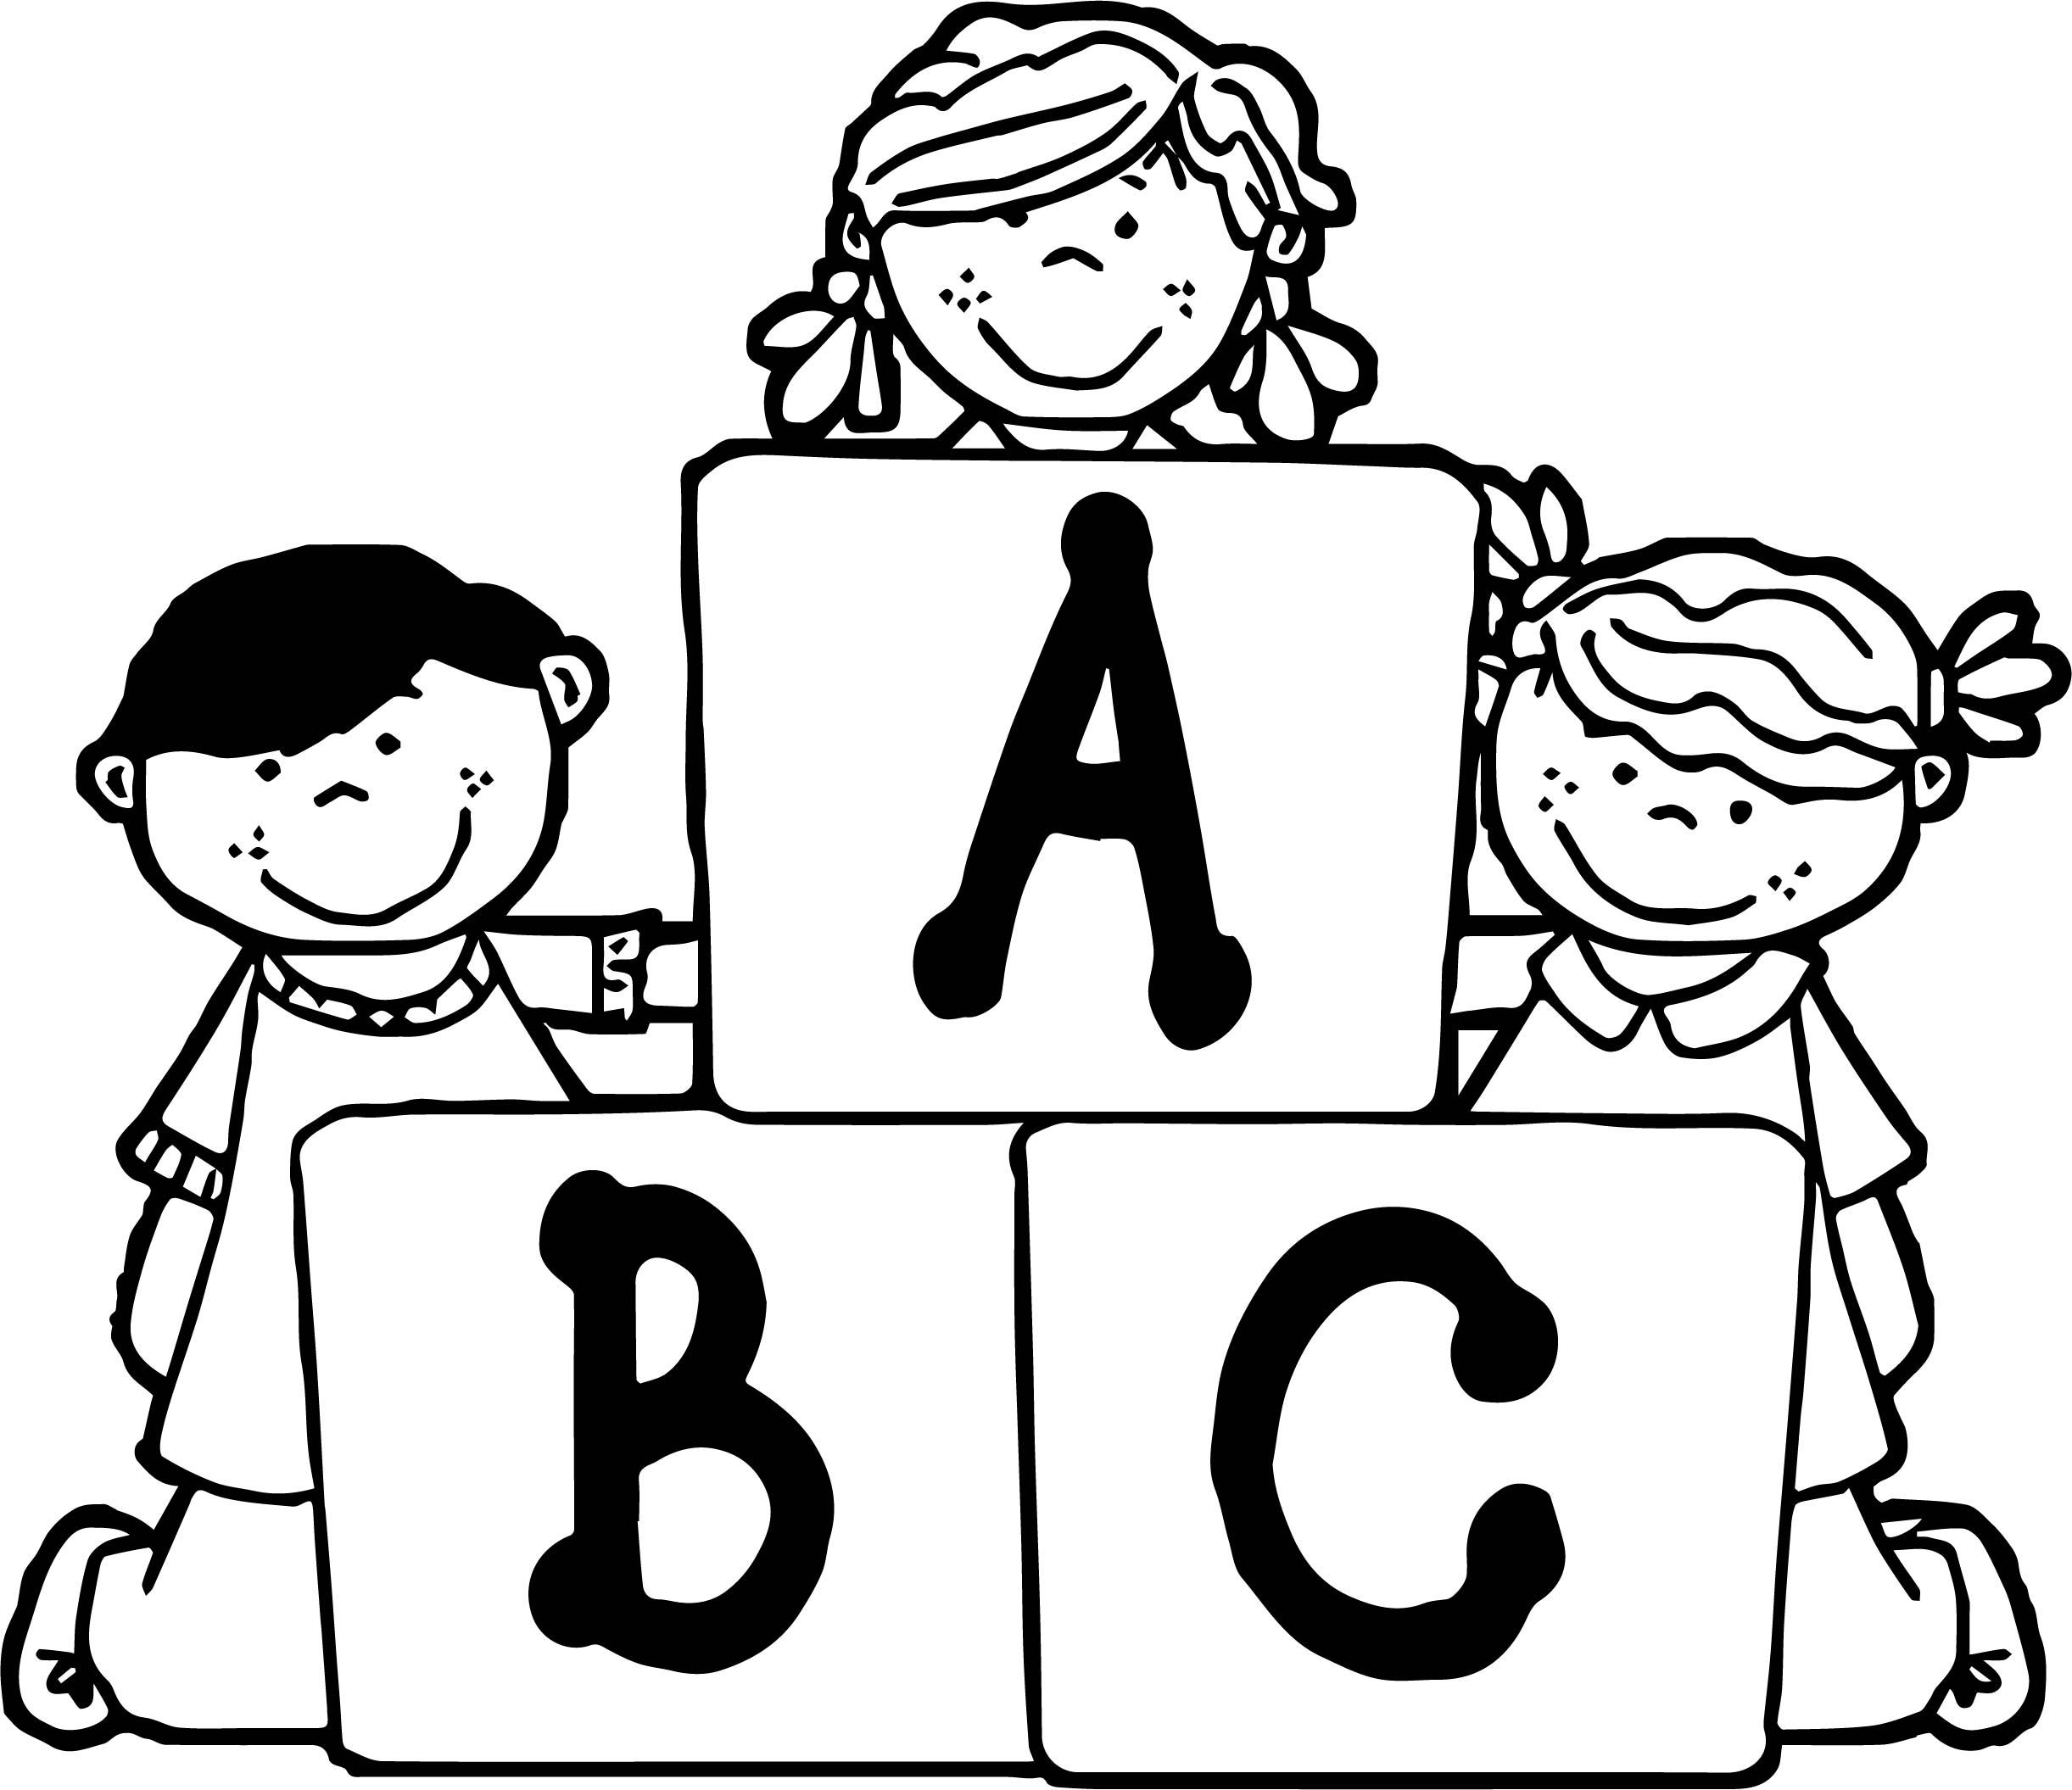 A1 pictures. ABC раскраска. Букварь раскраска для детей. Raskraska для детей ABC. ABC раскраски для детей.